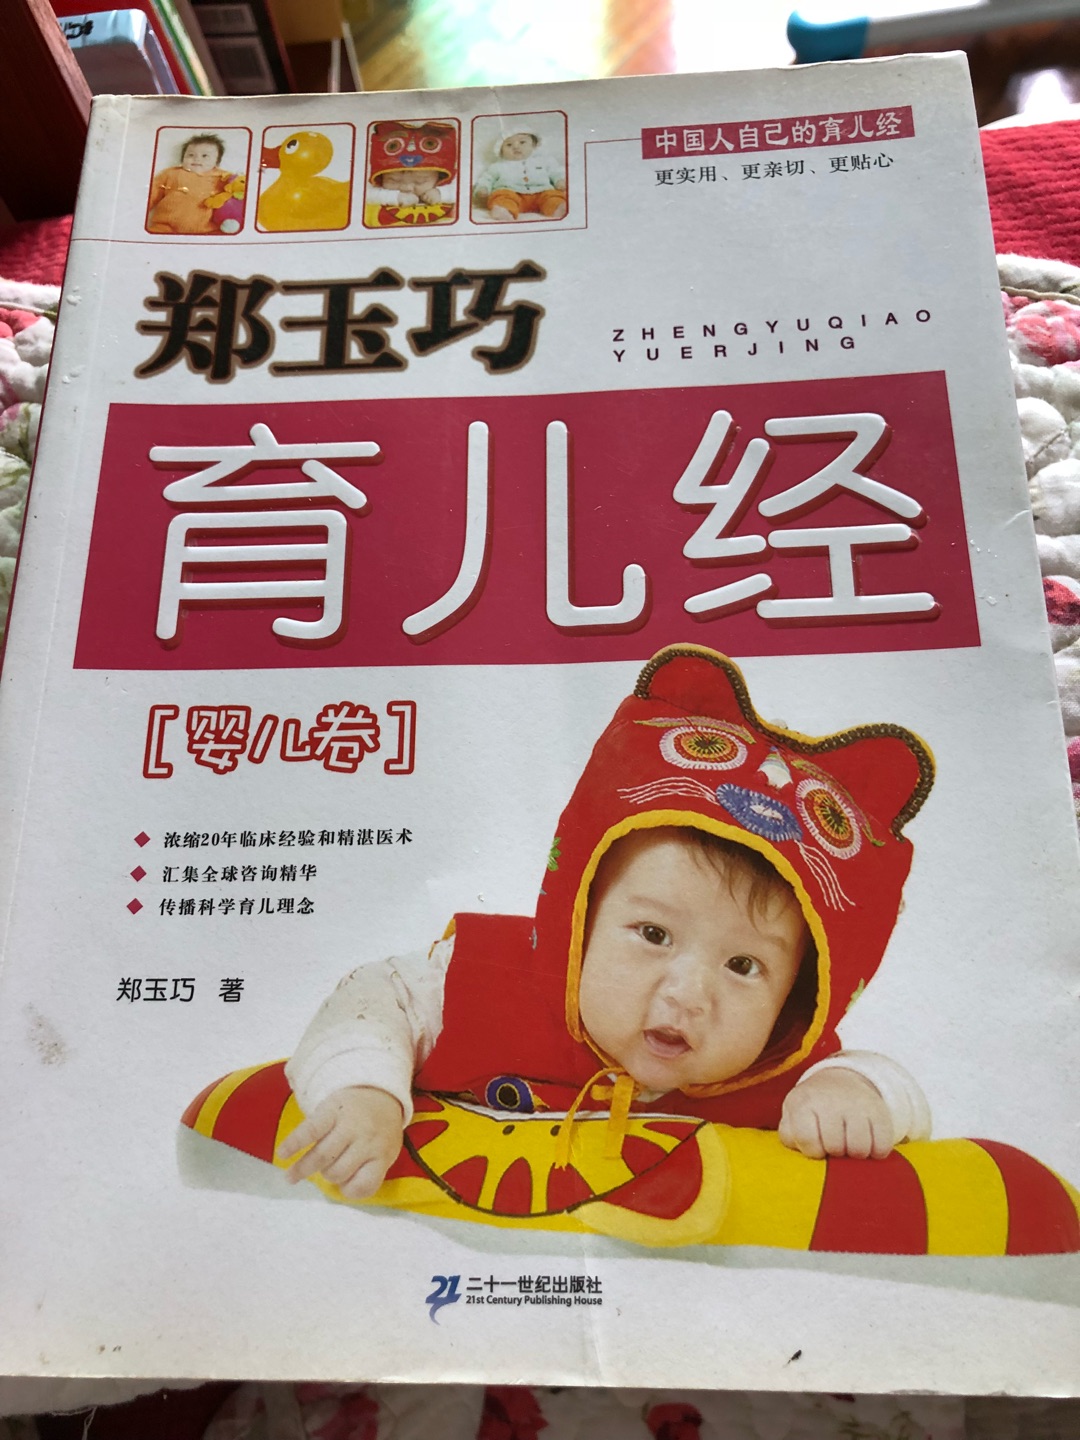 这本书不错，和宝宝一起阅读，培养从小好阅读的好习惯！